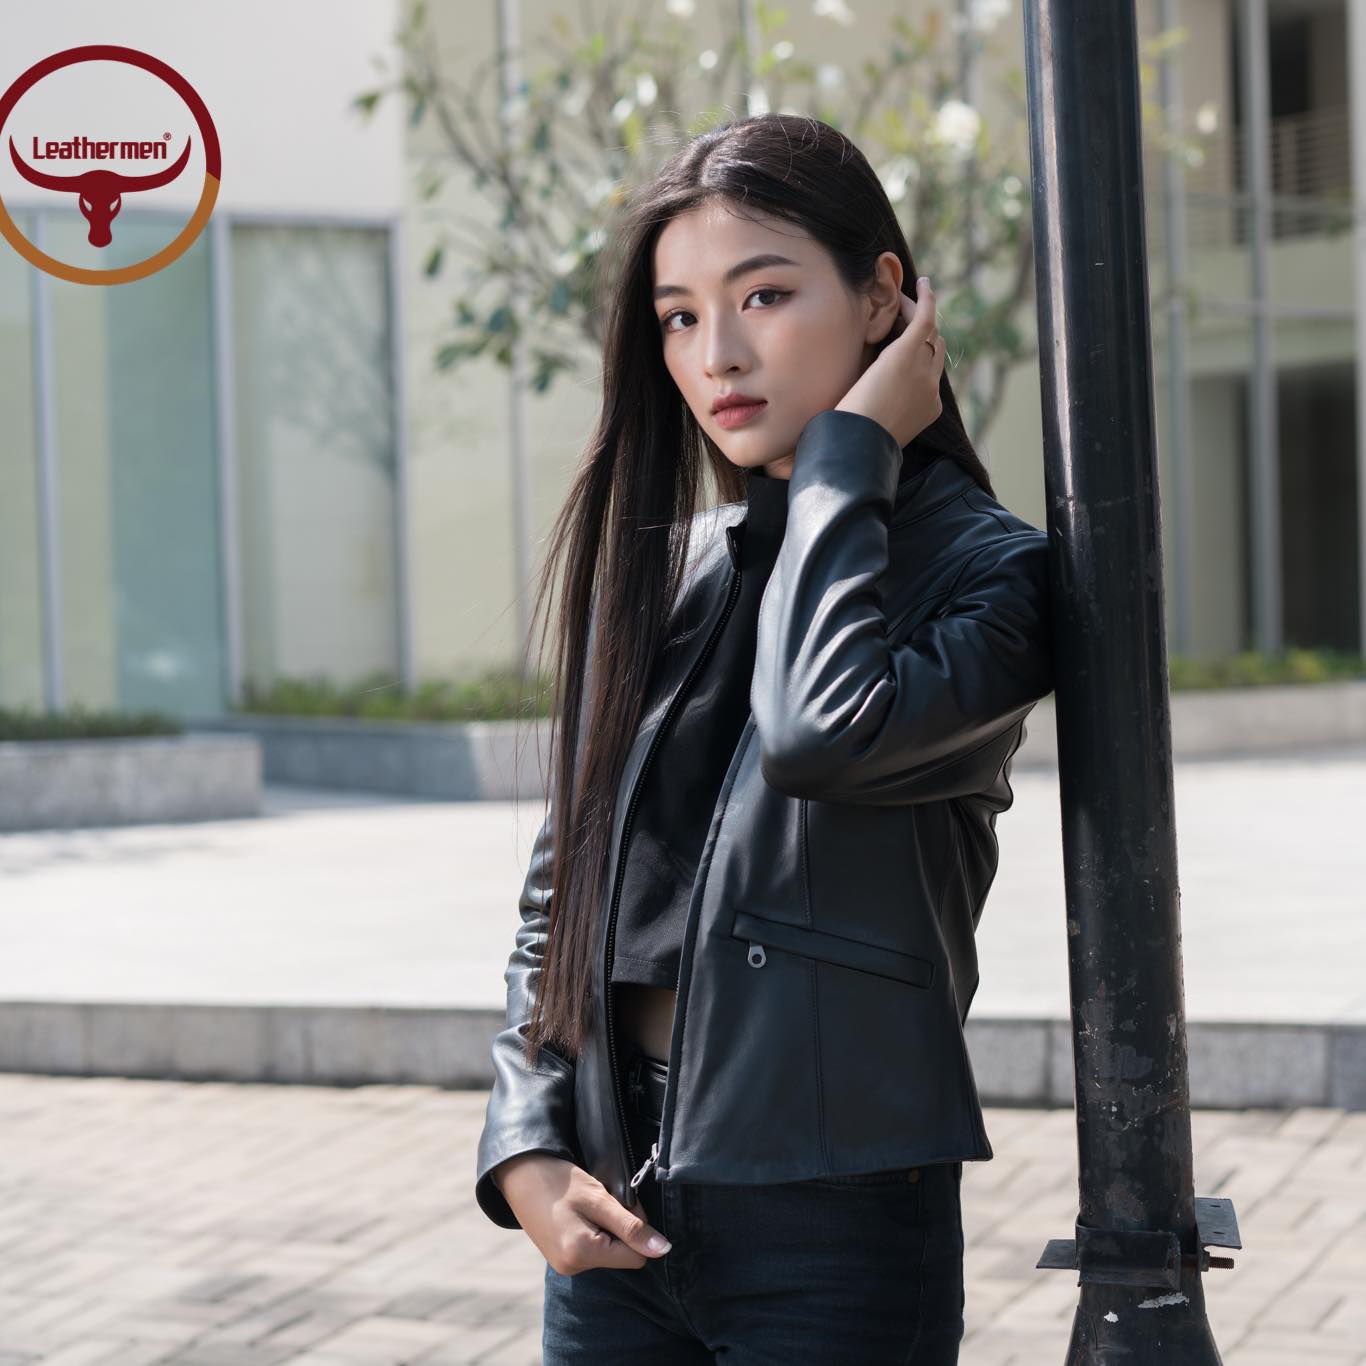 Top cửa hàng bán áo khoác da nữ đẹp nhất Hà Nội